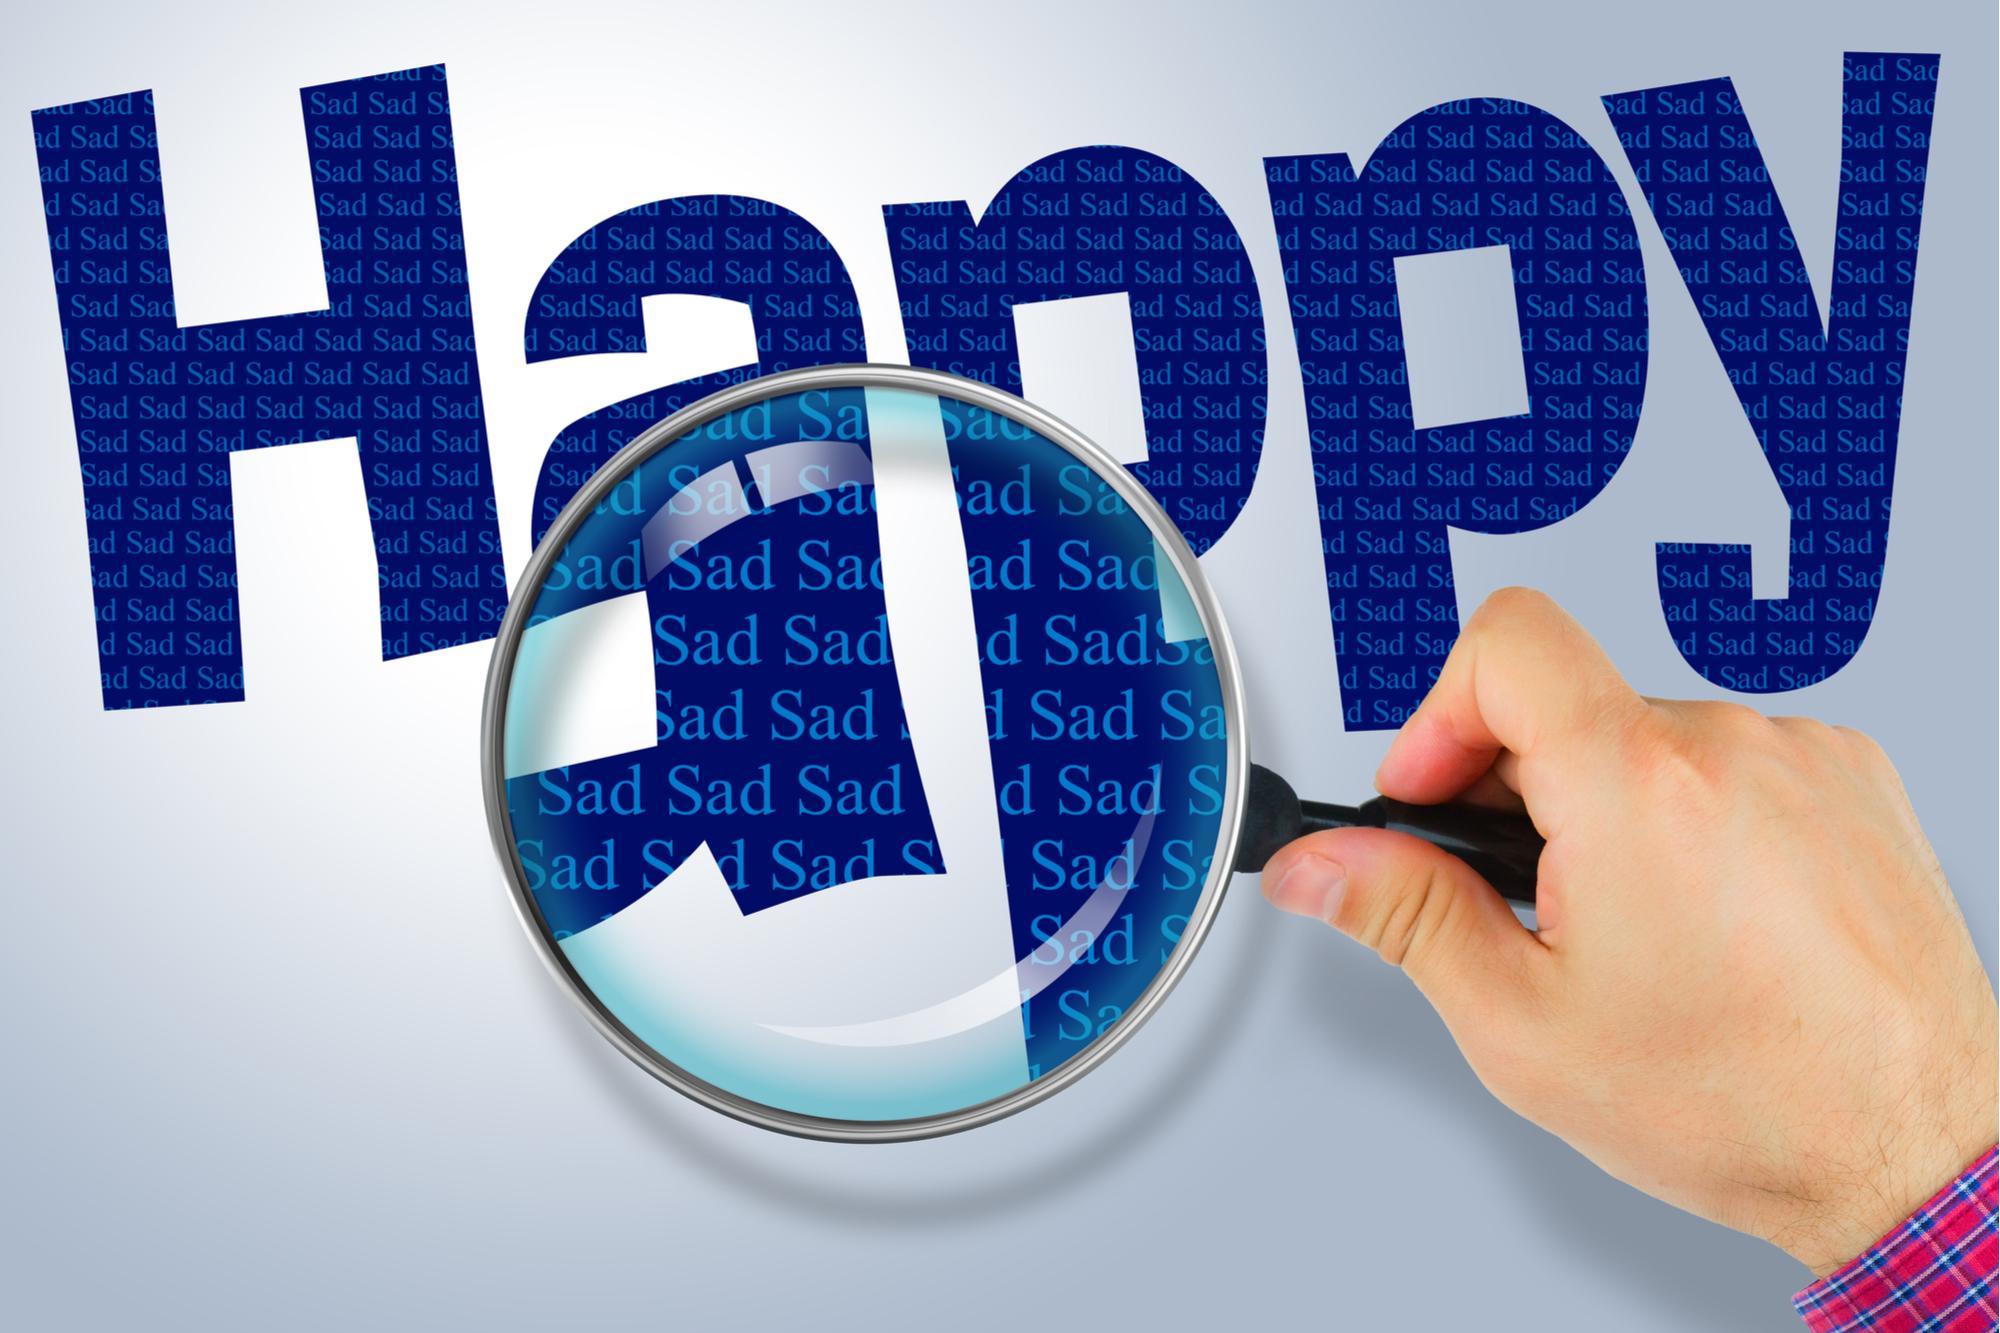 あなたにとって幸せの反対語は 幸せのヒントはその反対語にある 僕らの時代の幸福論vol 5 ライフハッカー ジャパン